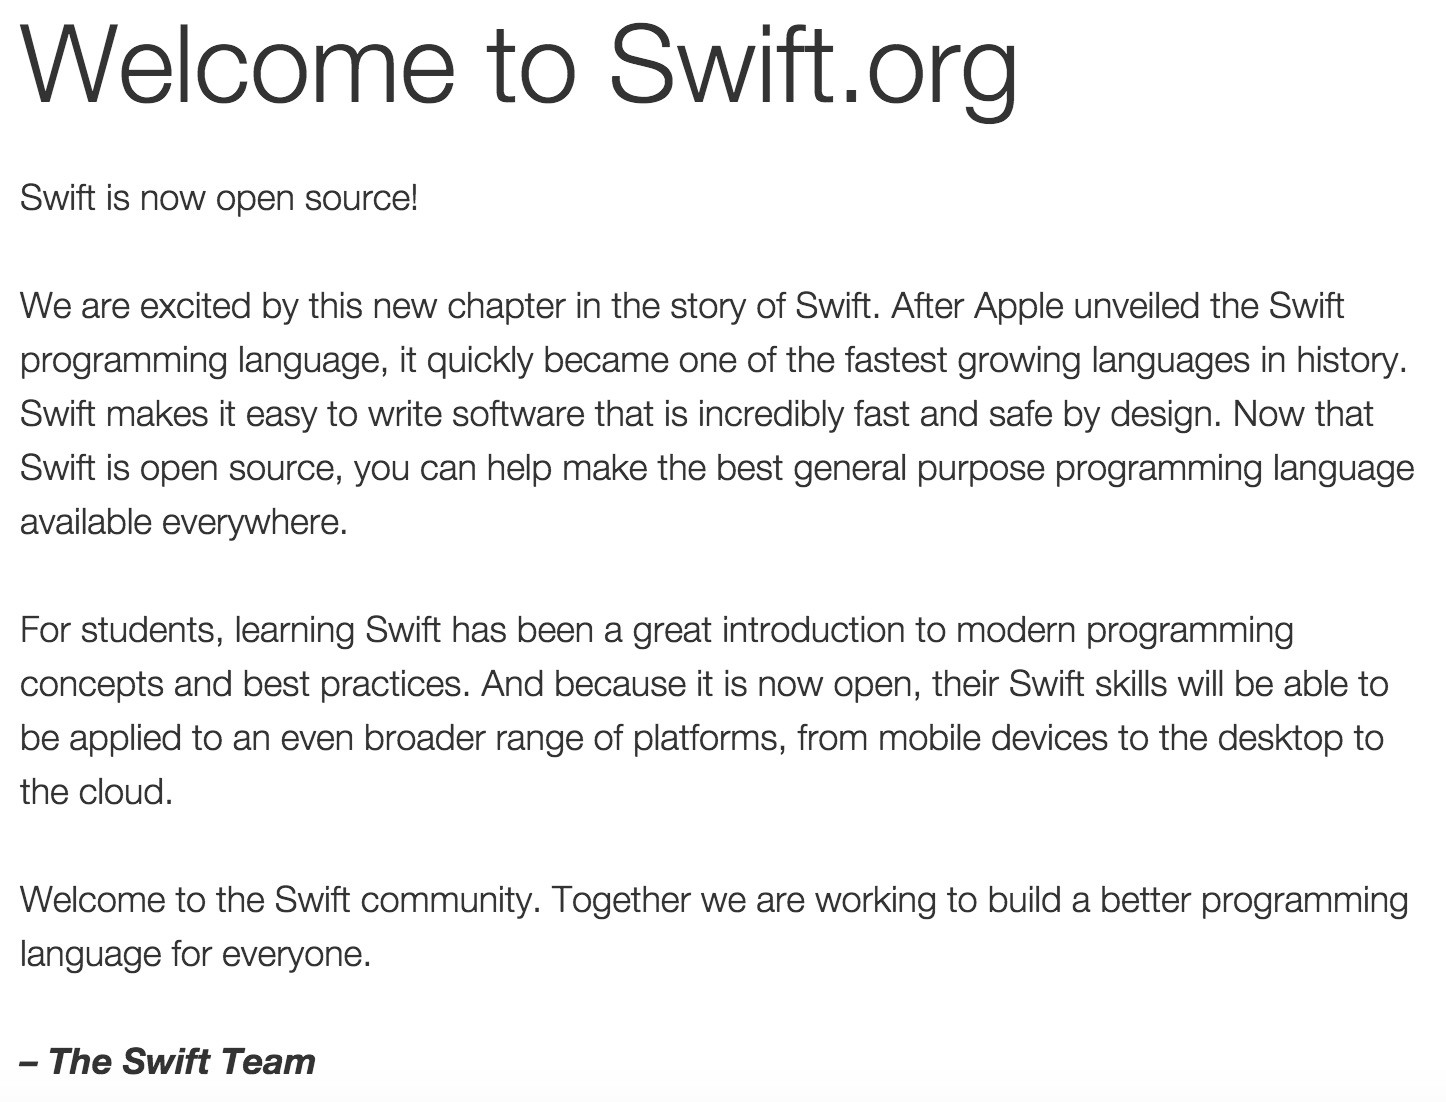 苹果履行承诺 Swift开放源代码进入2.0时代